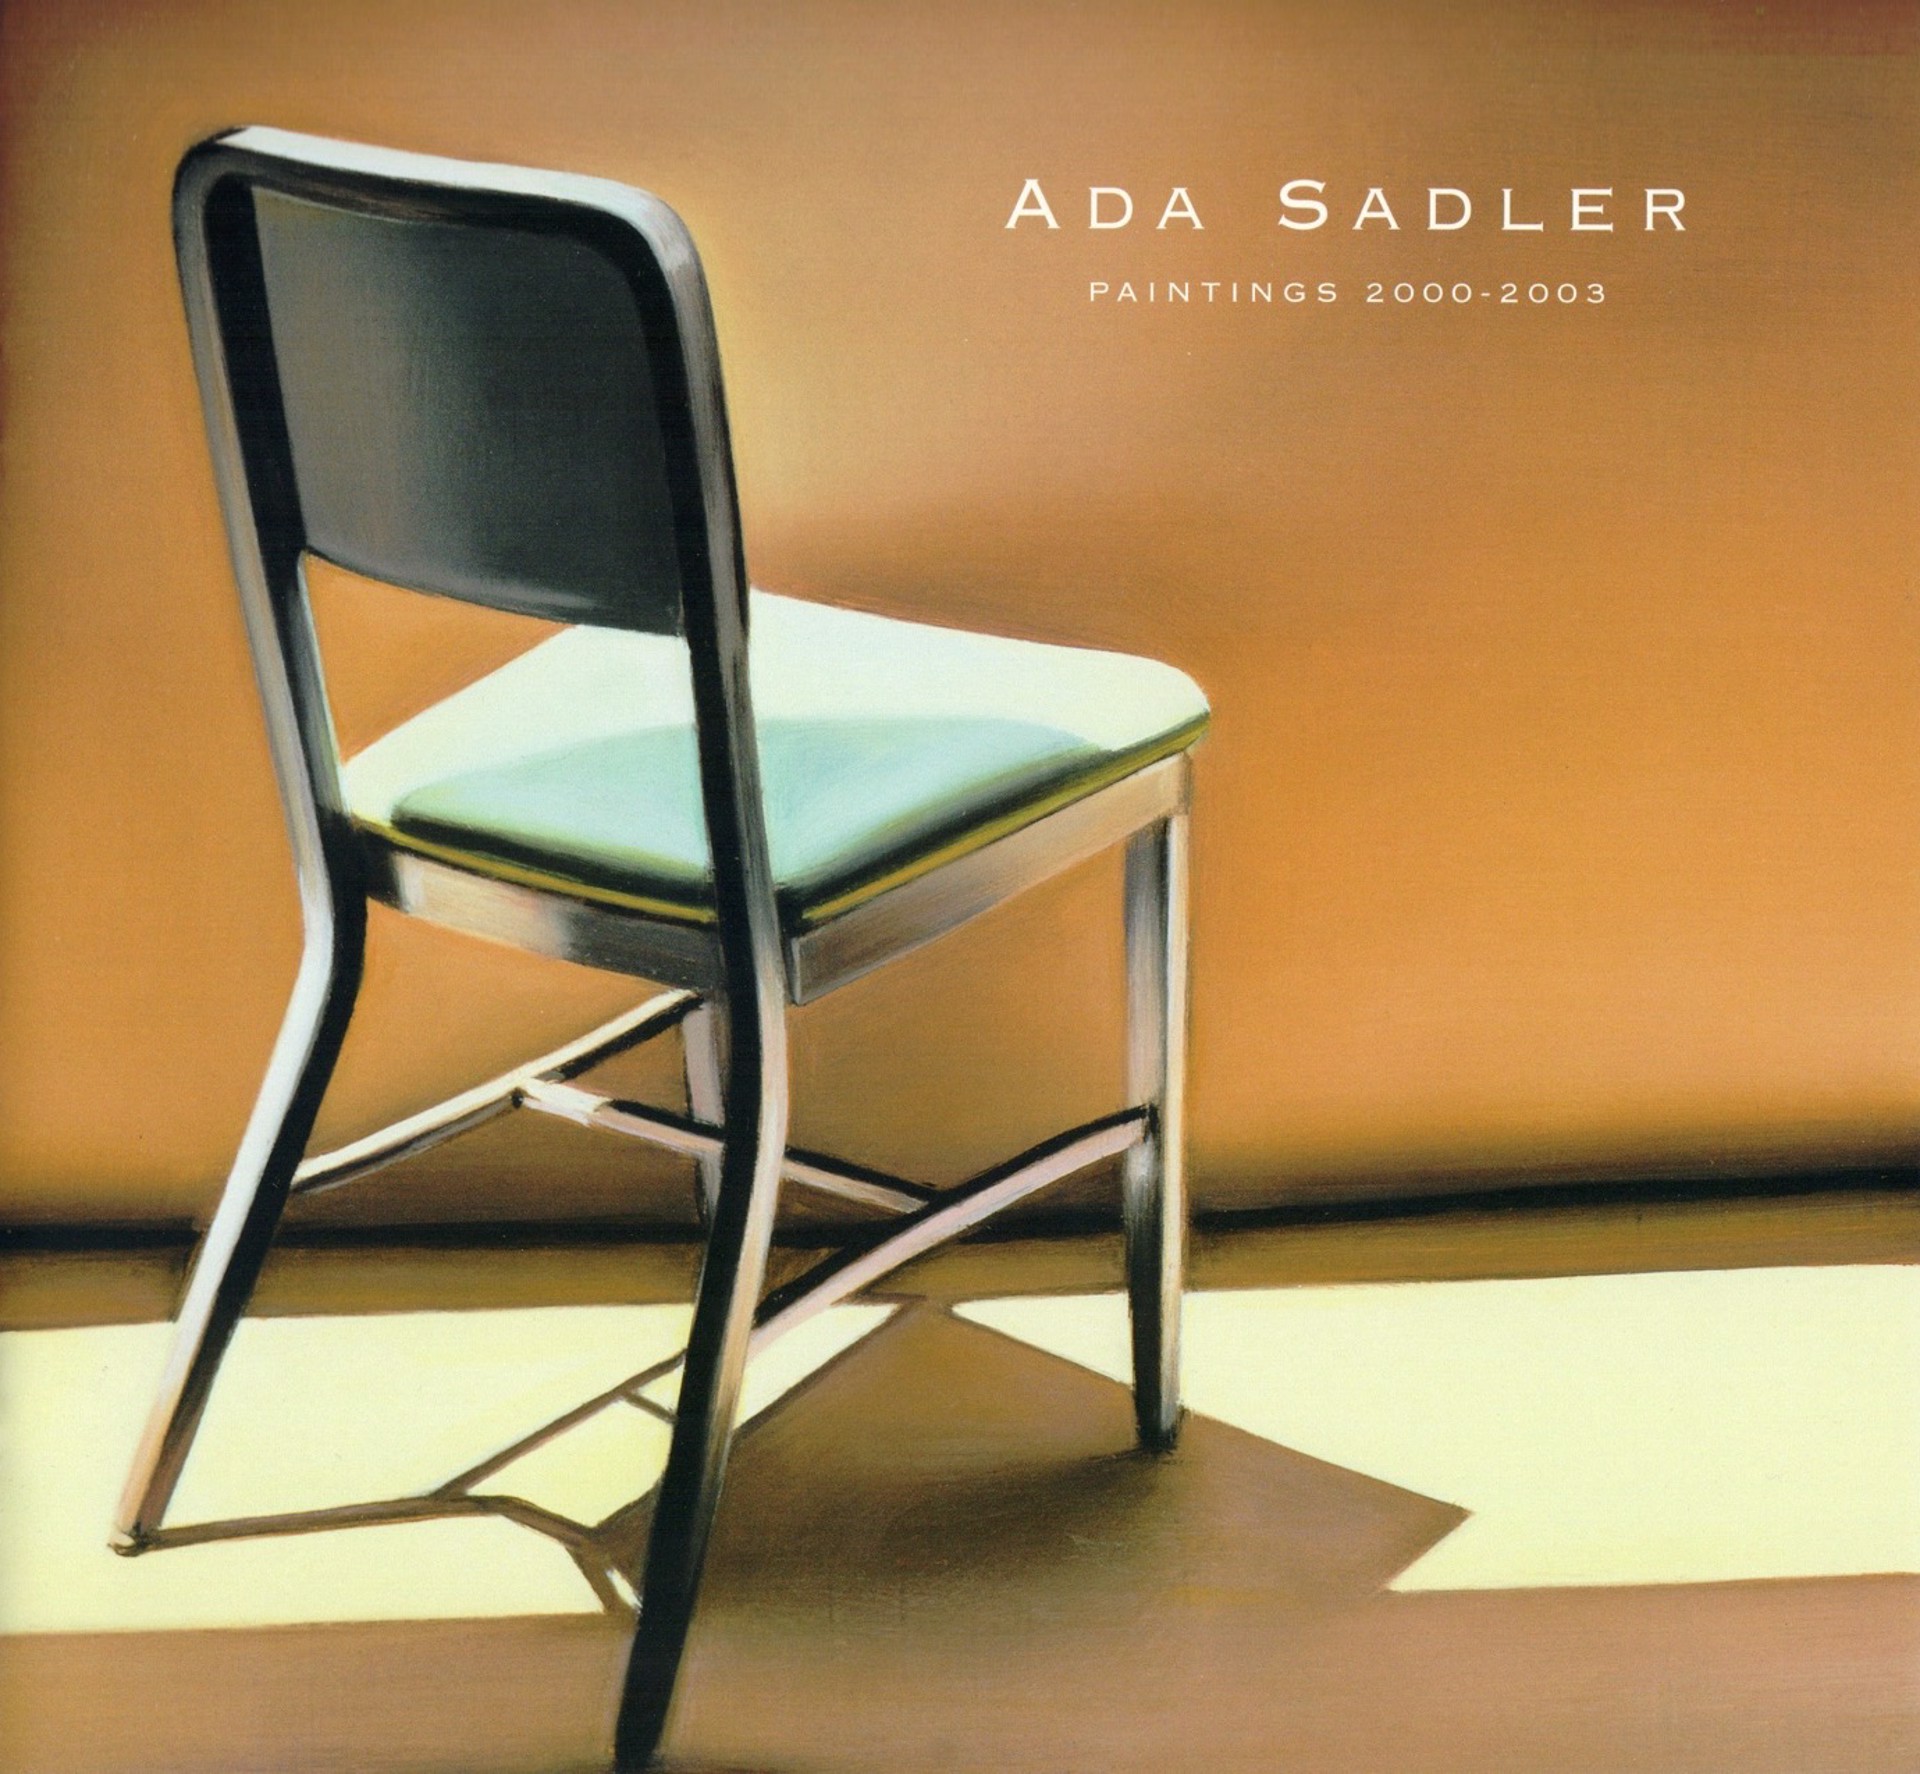 Ada Sadler: Paintings 2000-2003 by Ada Sadler